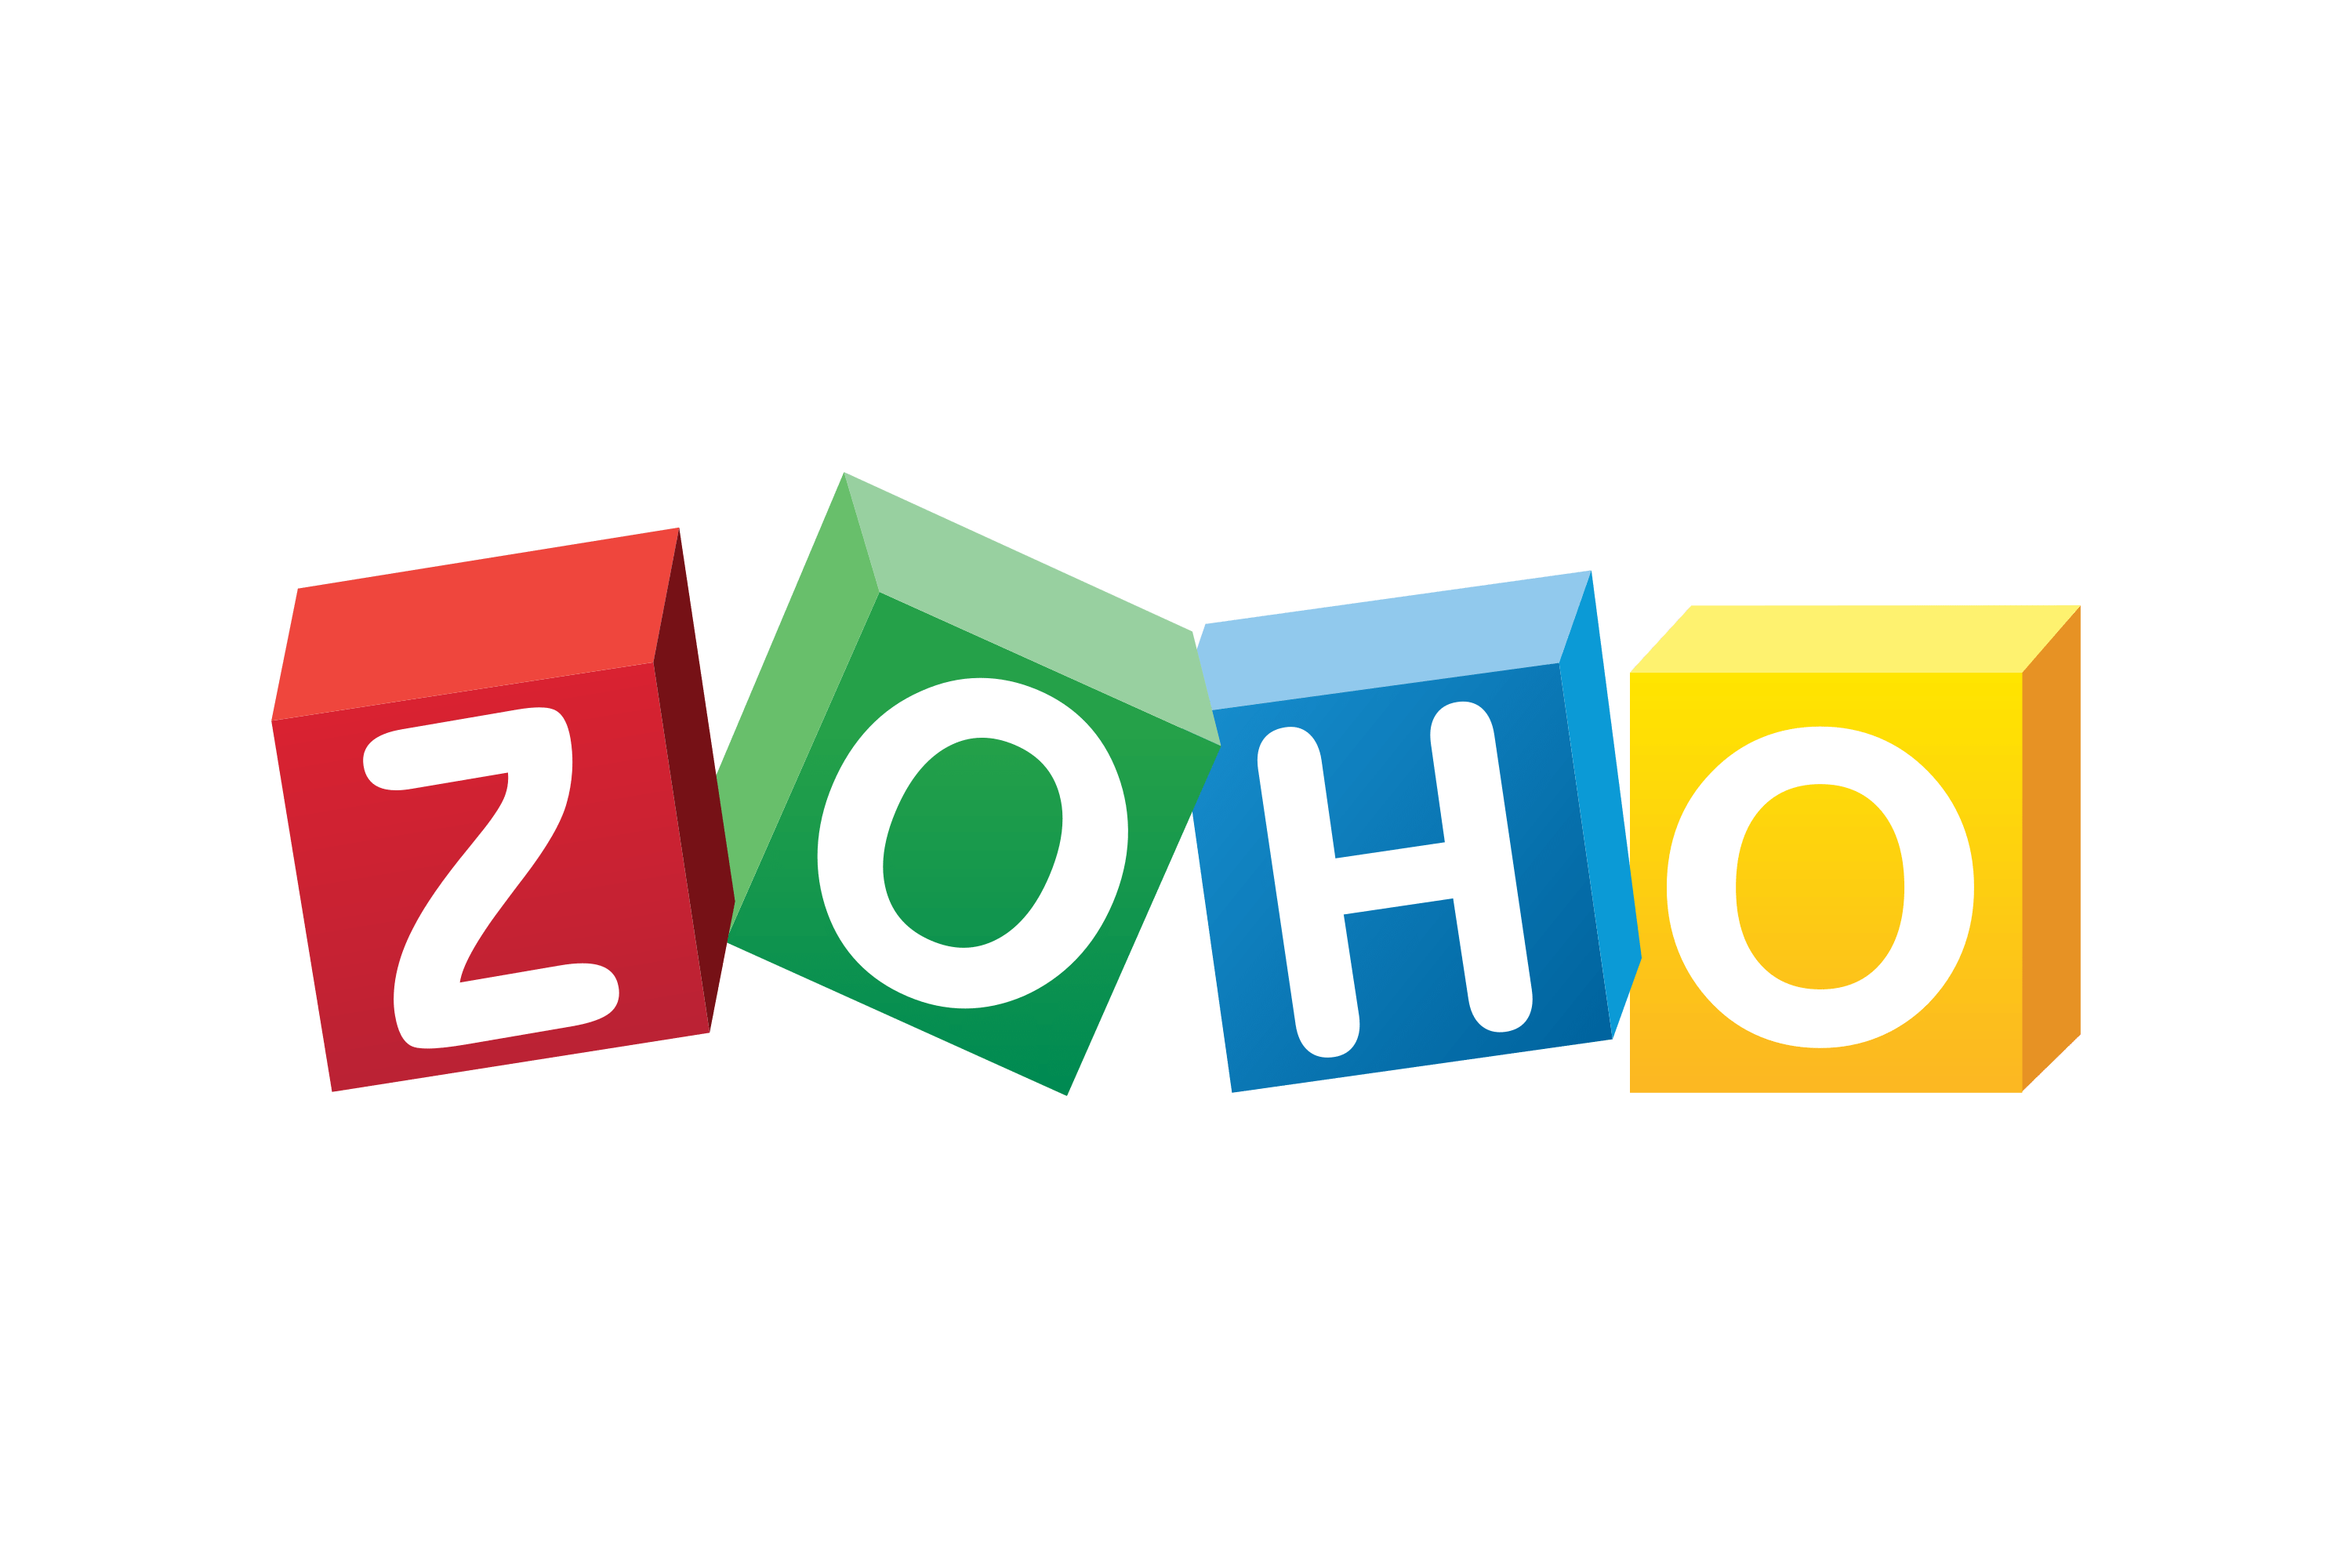 Logo of Zoho software